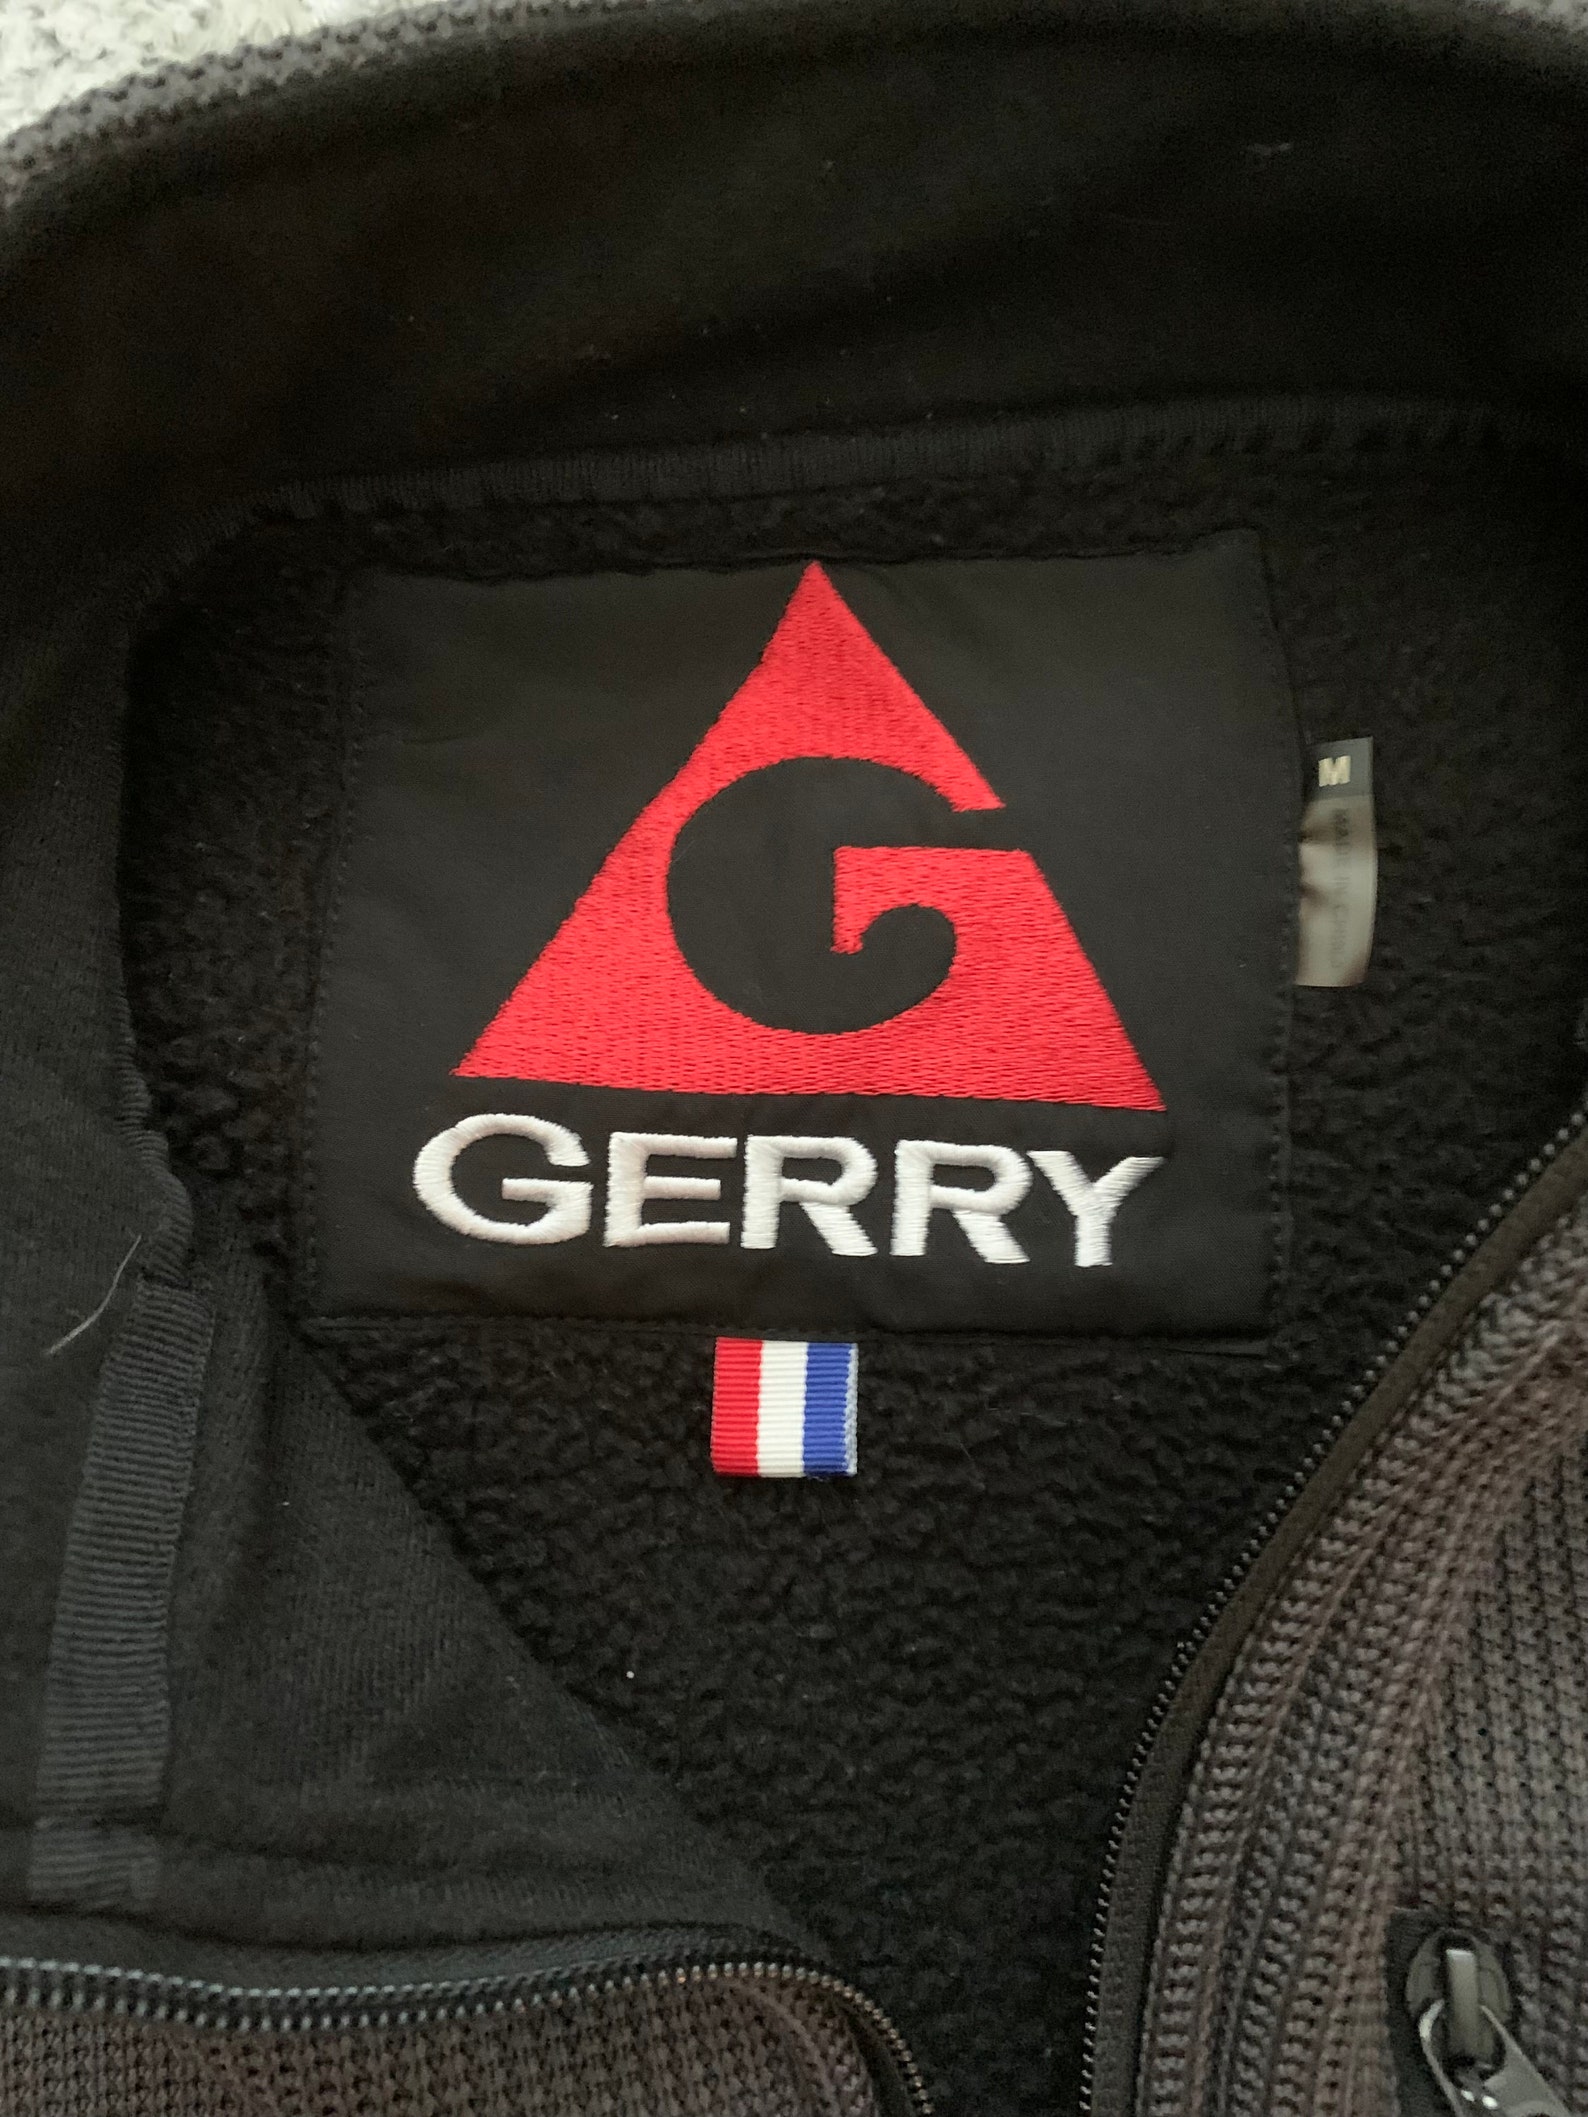 Cozy Gerry Outdoors Jacket. Medium. | Etsy